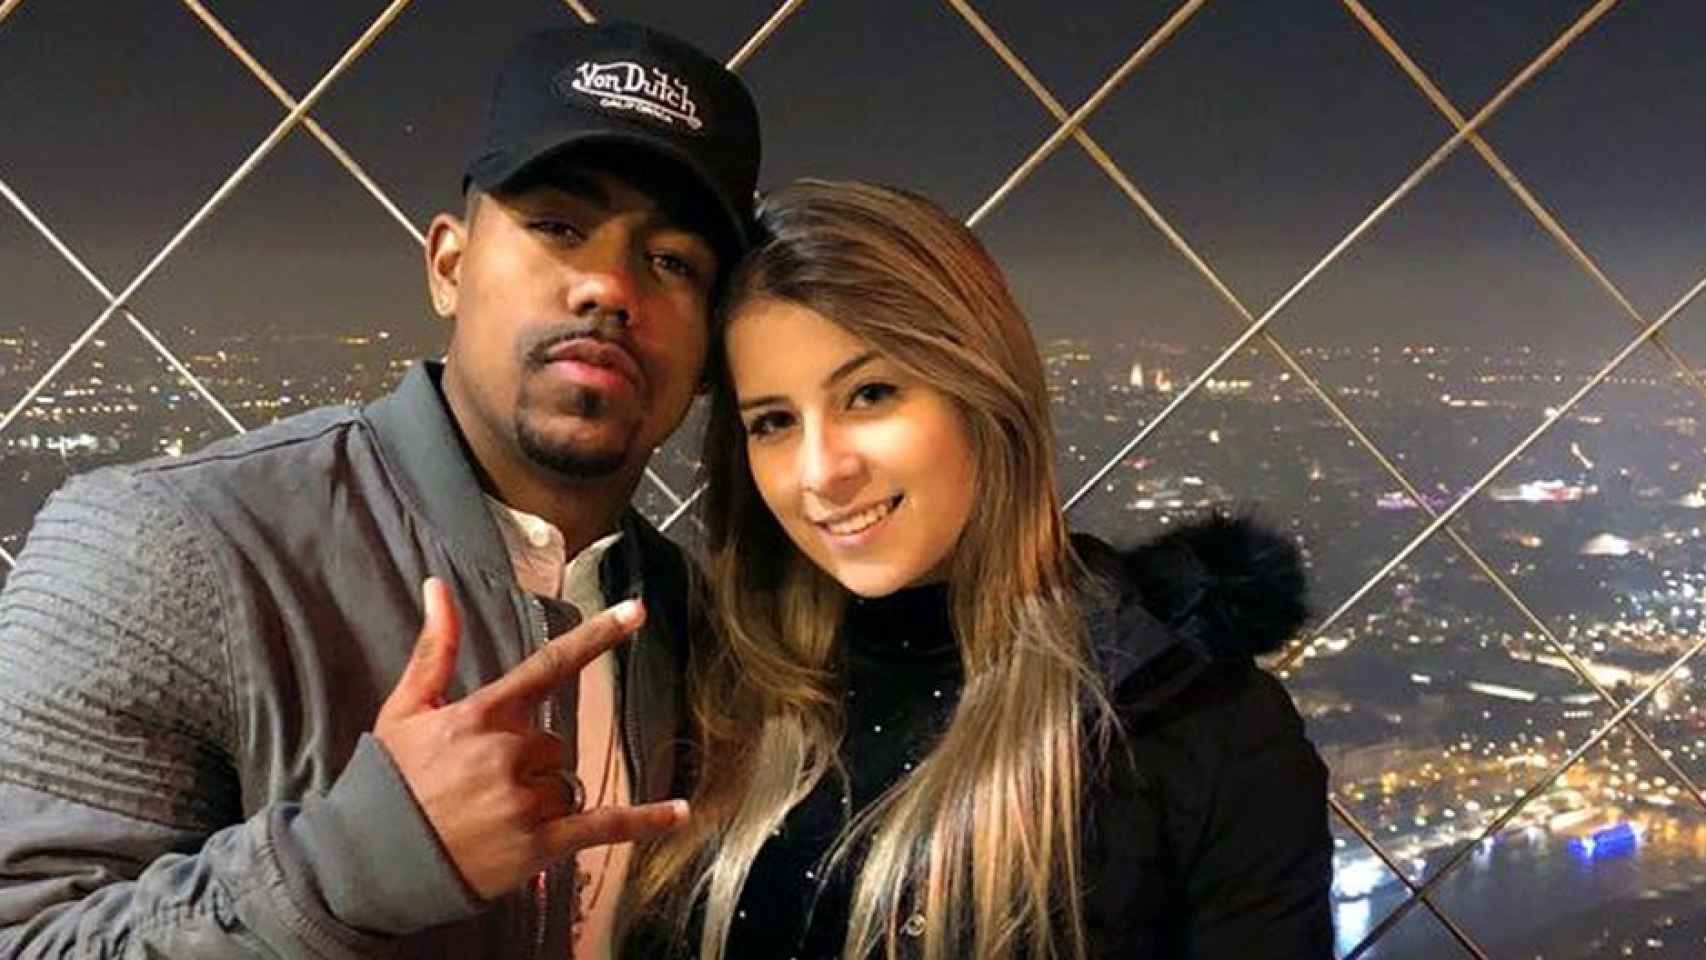 Malcom y su novia, Leticia Pereira, en la Torre Eiffel, París / INSTAGRAM